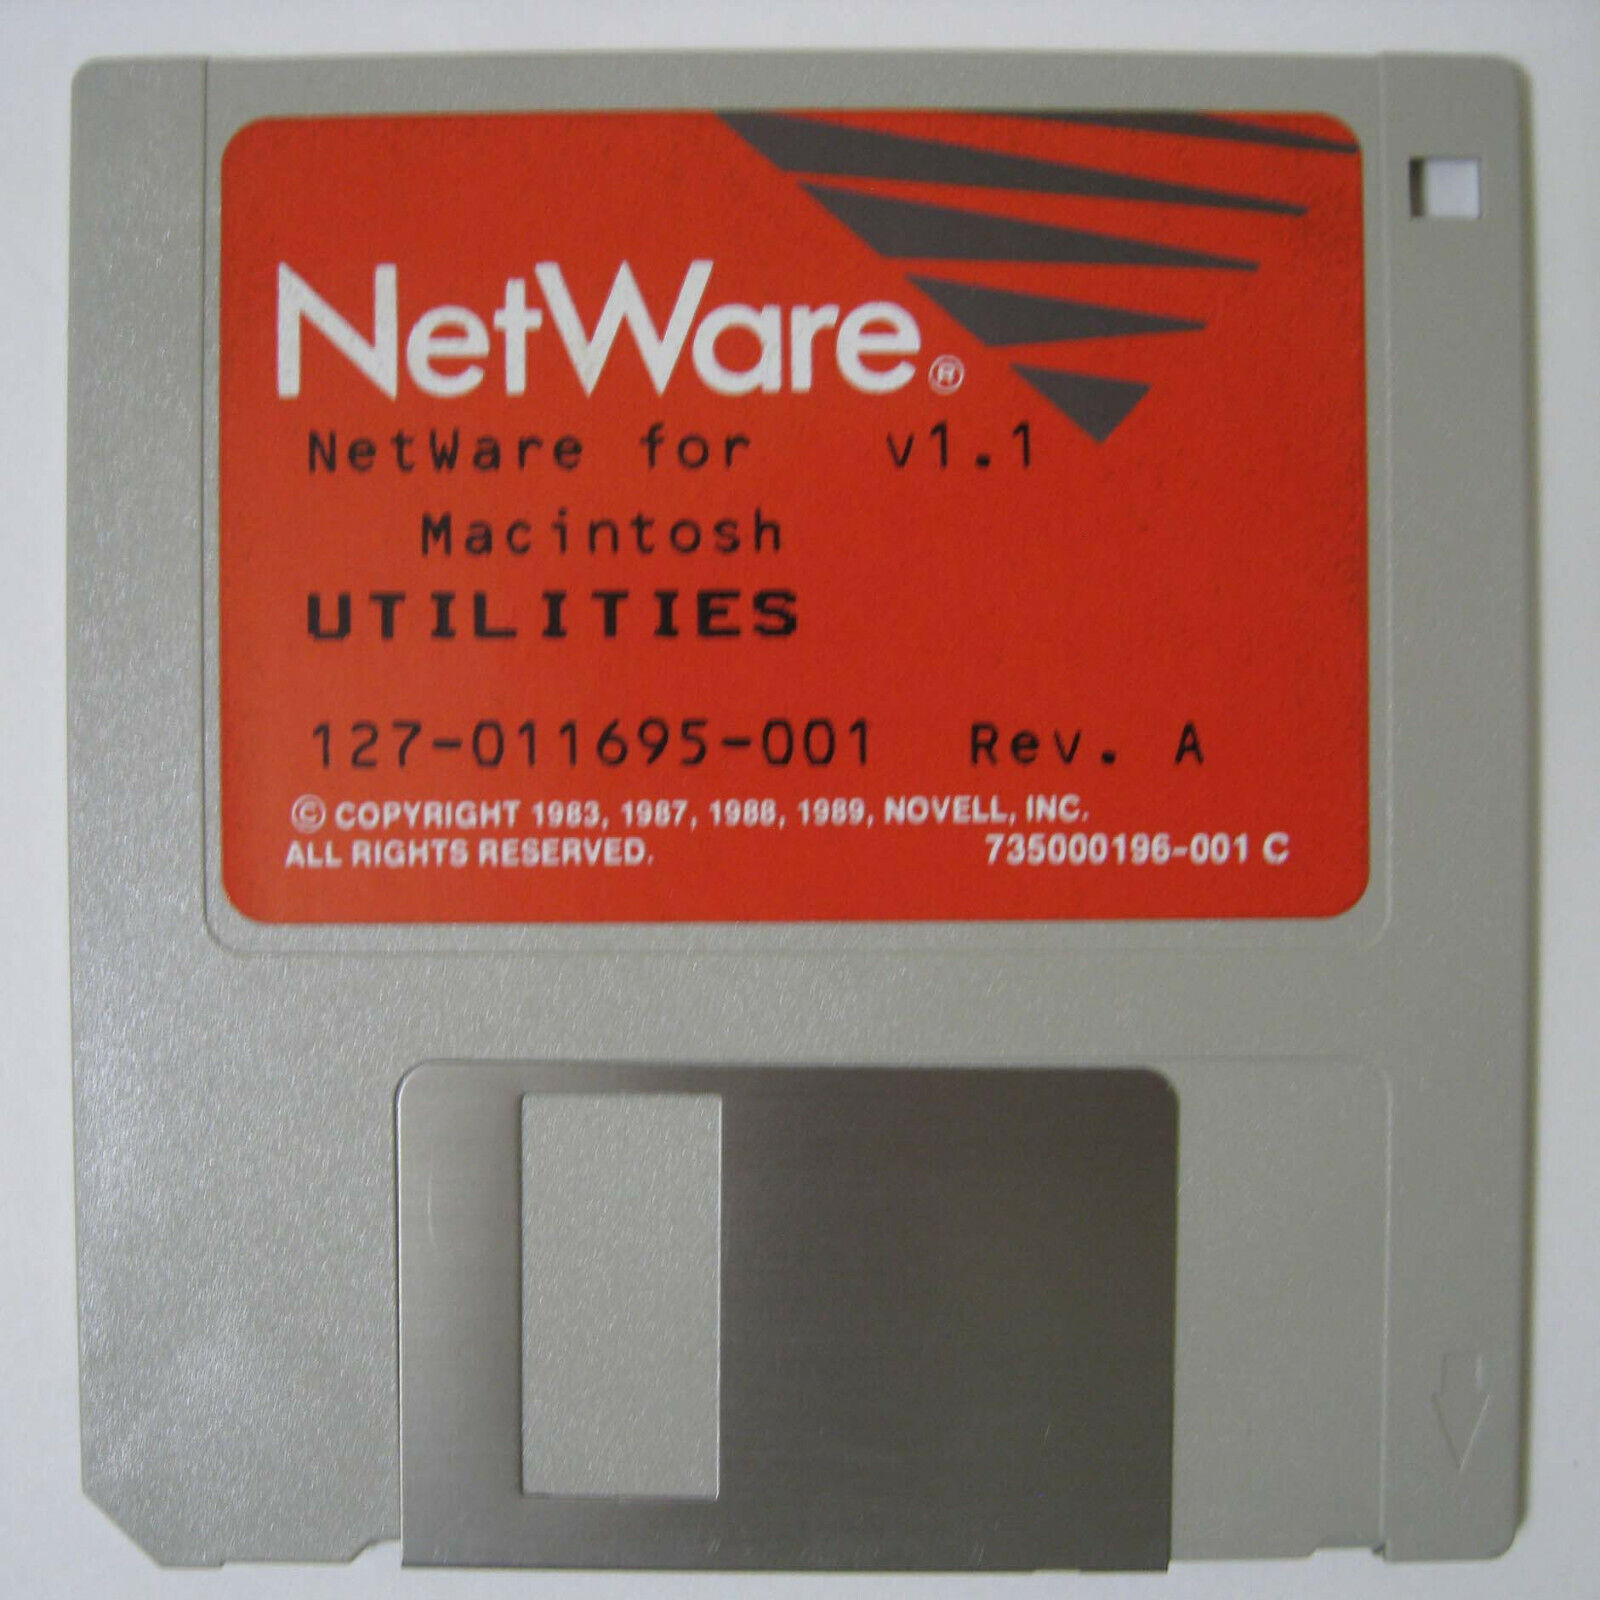 Novell ® NetWare For Macintosh v1.1 Utilities © 1983 1987 1988 1989 3.5" Floppy